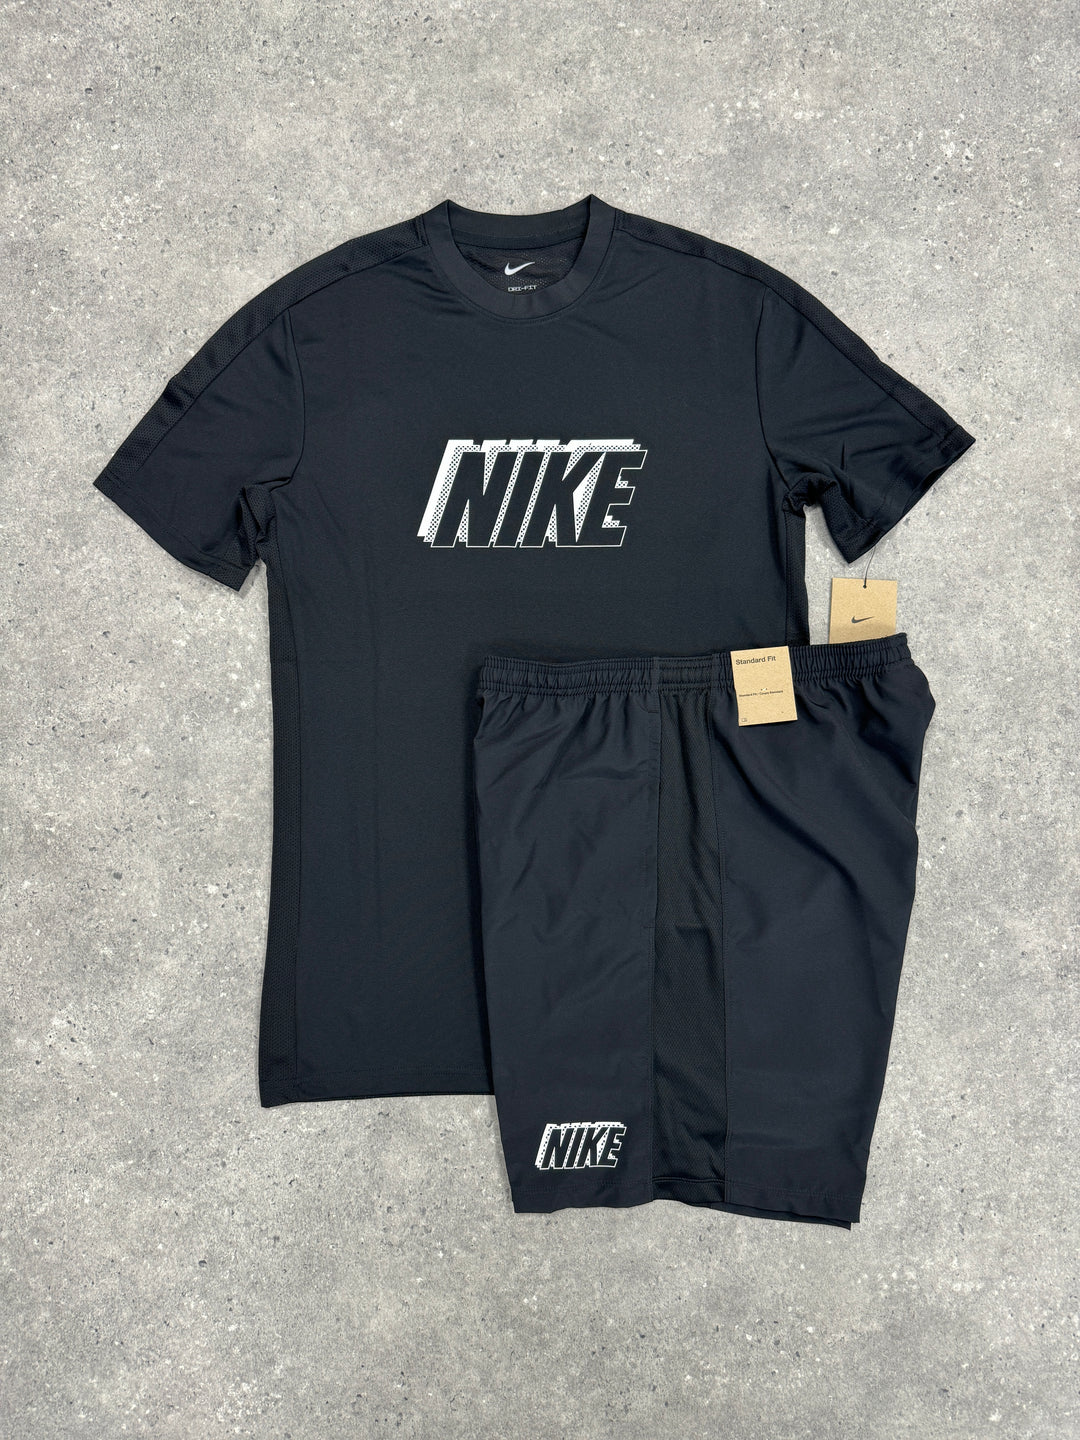 Nike dri fit gx set (black)